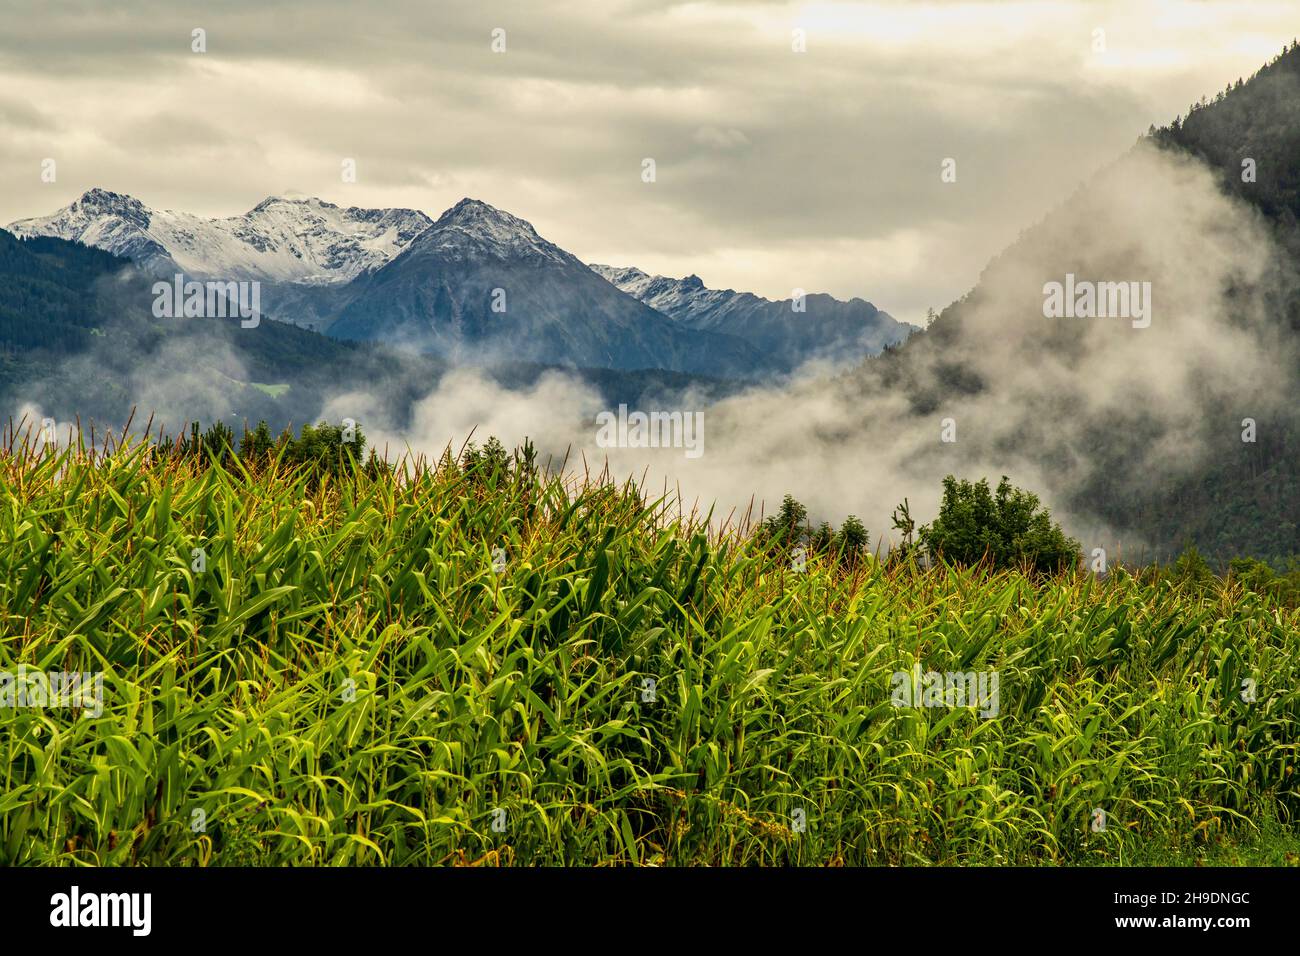 Les sommets des Alpes autrichiennes ont été blanchis par la première neige.Au premier plan un champ de maïs.Tyrol, Autriche, Europe Banque D'Images